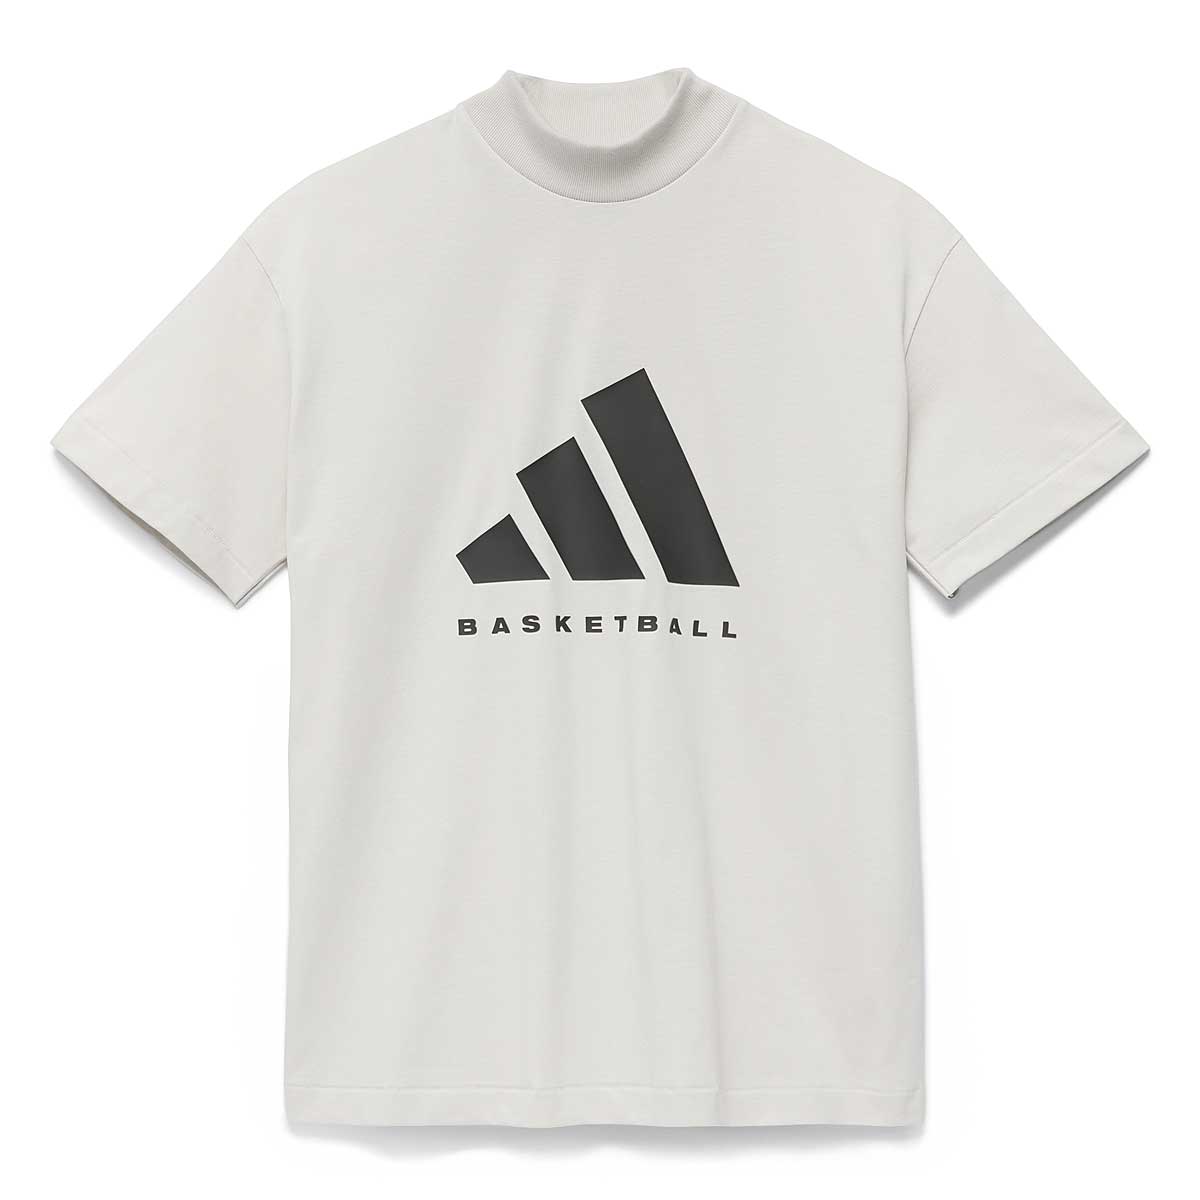 Adidas Chapter 3 Basketball T-shirt, Talc 2XL